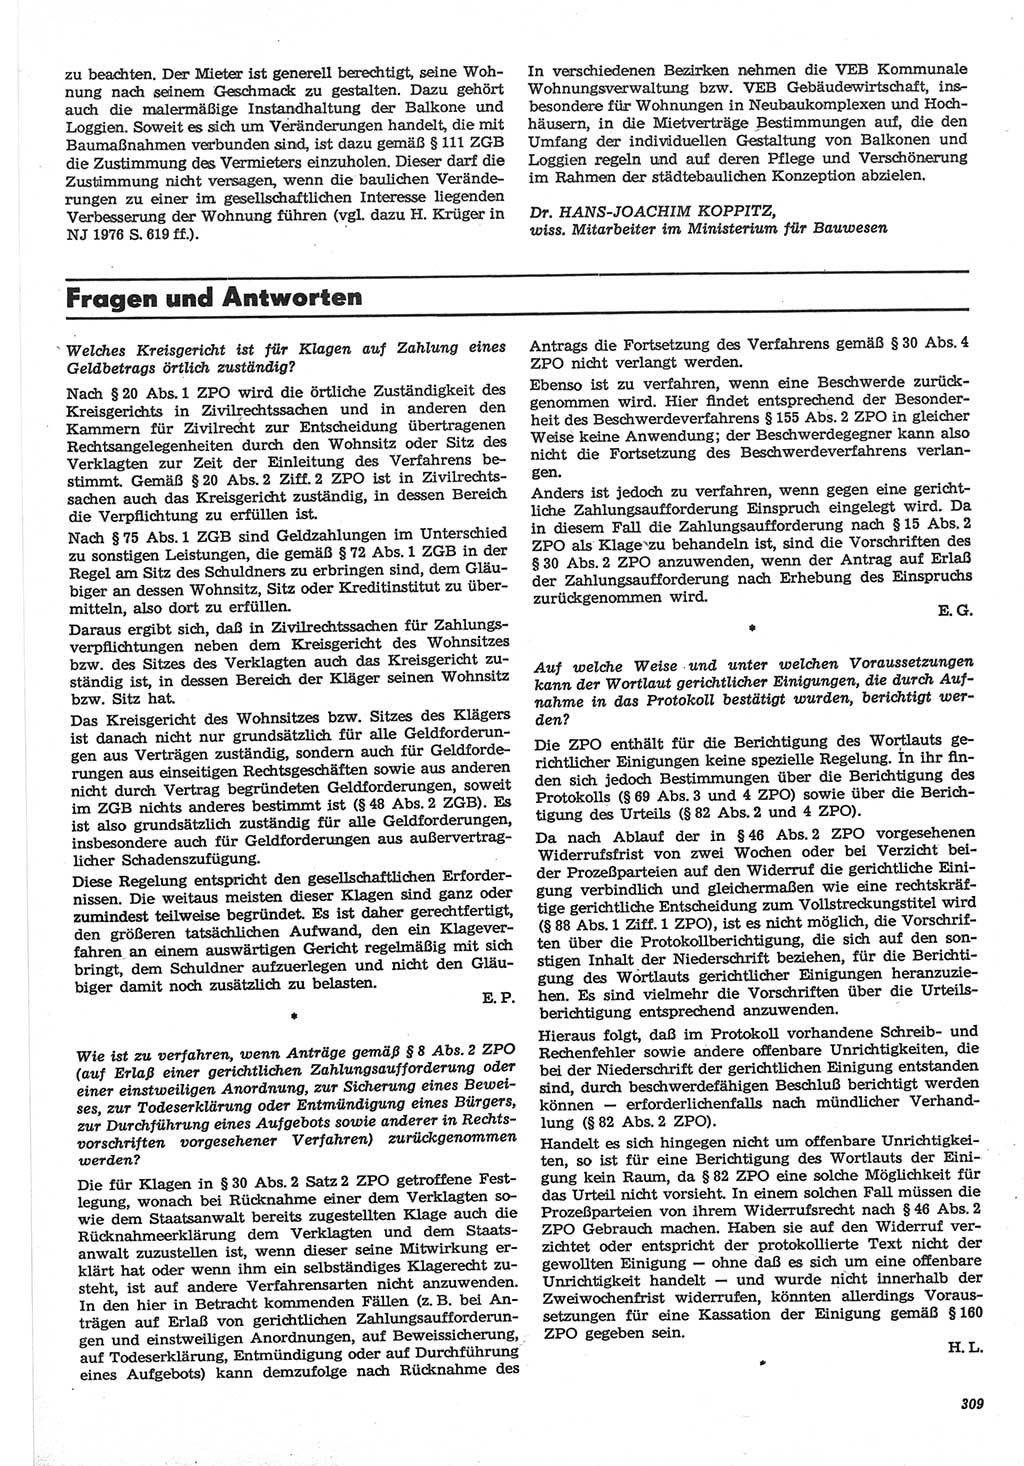 Neue Justiz (NJ), Zeitschrift für Recht und Rechtswissenschaft-Zeitschrift, sozialistisches Recht und Gesetzlichkeit, 31. Jahrgang 1977, Seite 309 (NJ DDR 1977, S. 309)